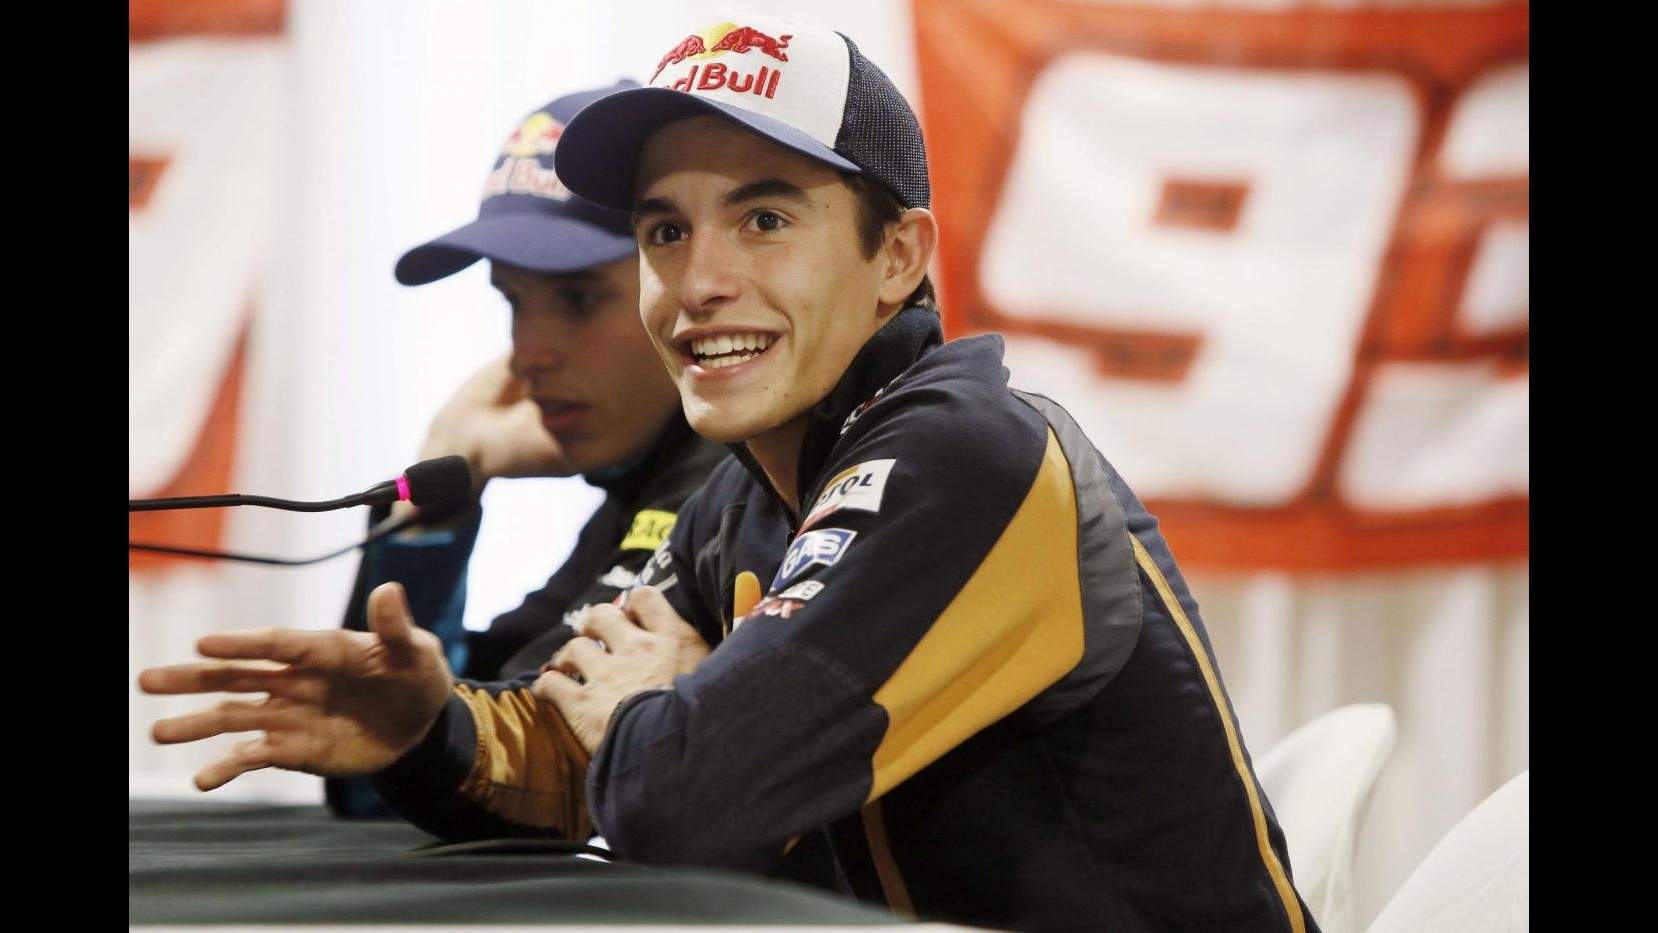 MotoGp, Qatar: Marquez al comando in prime libere davanti a Pedrosa, Rossi 9°